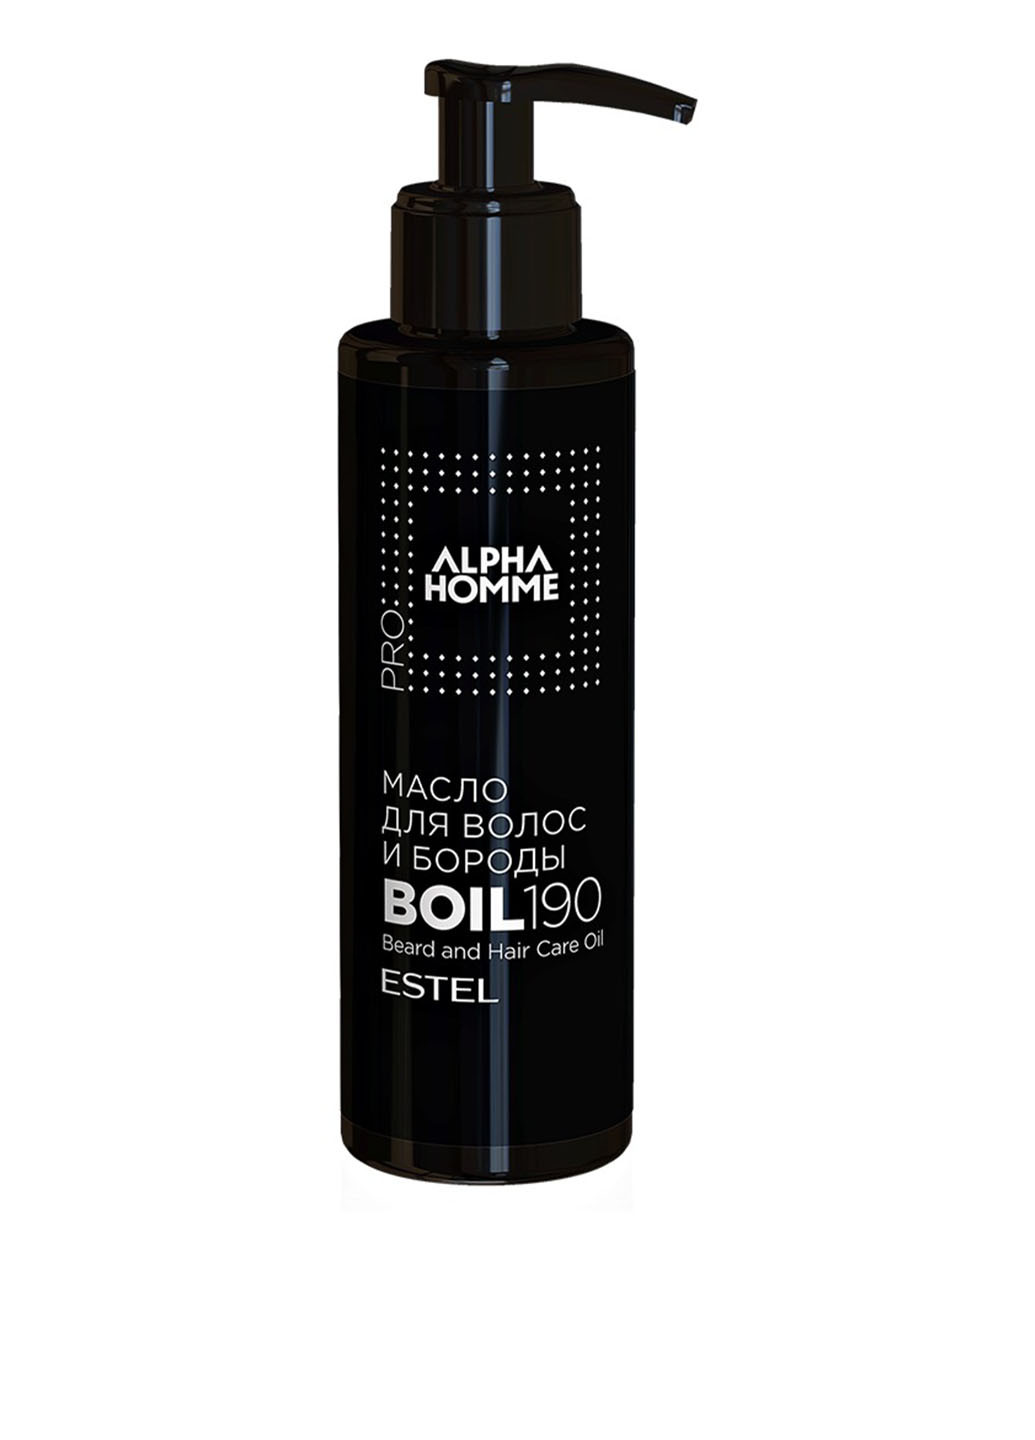 Масло для волос и бороды Alpha Homme Pro 190 мл Estel Professional (88100578)